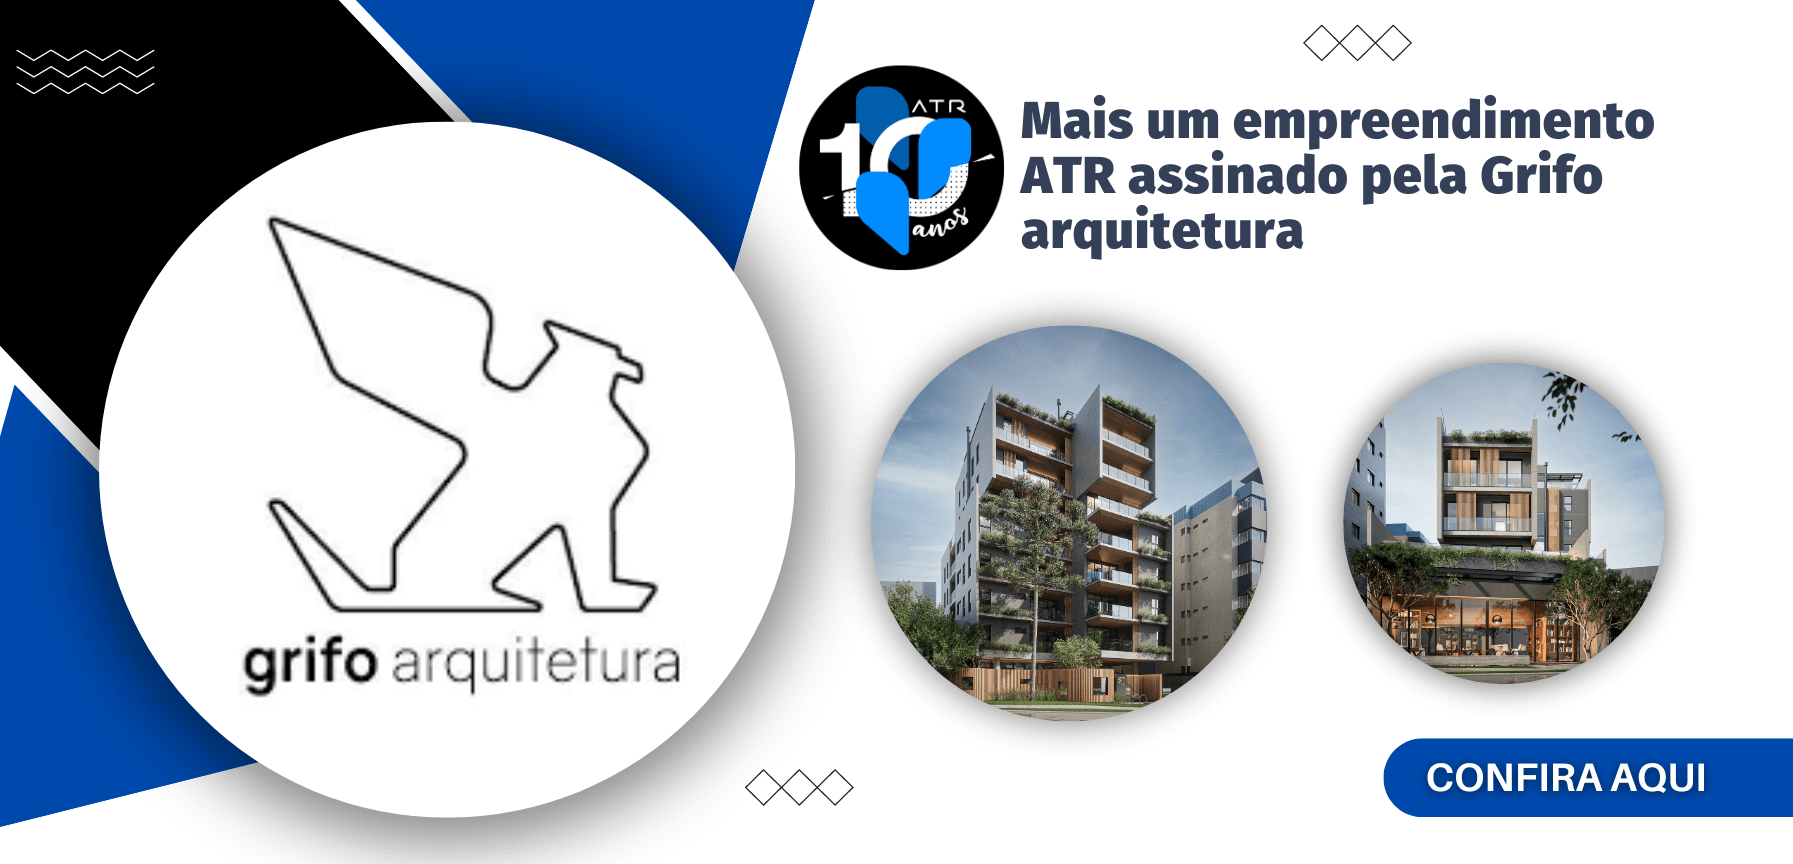 ATR tem seu terceiro empreendimento assinado pela Grifo Arquitetura